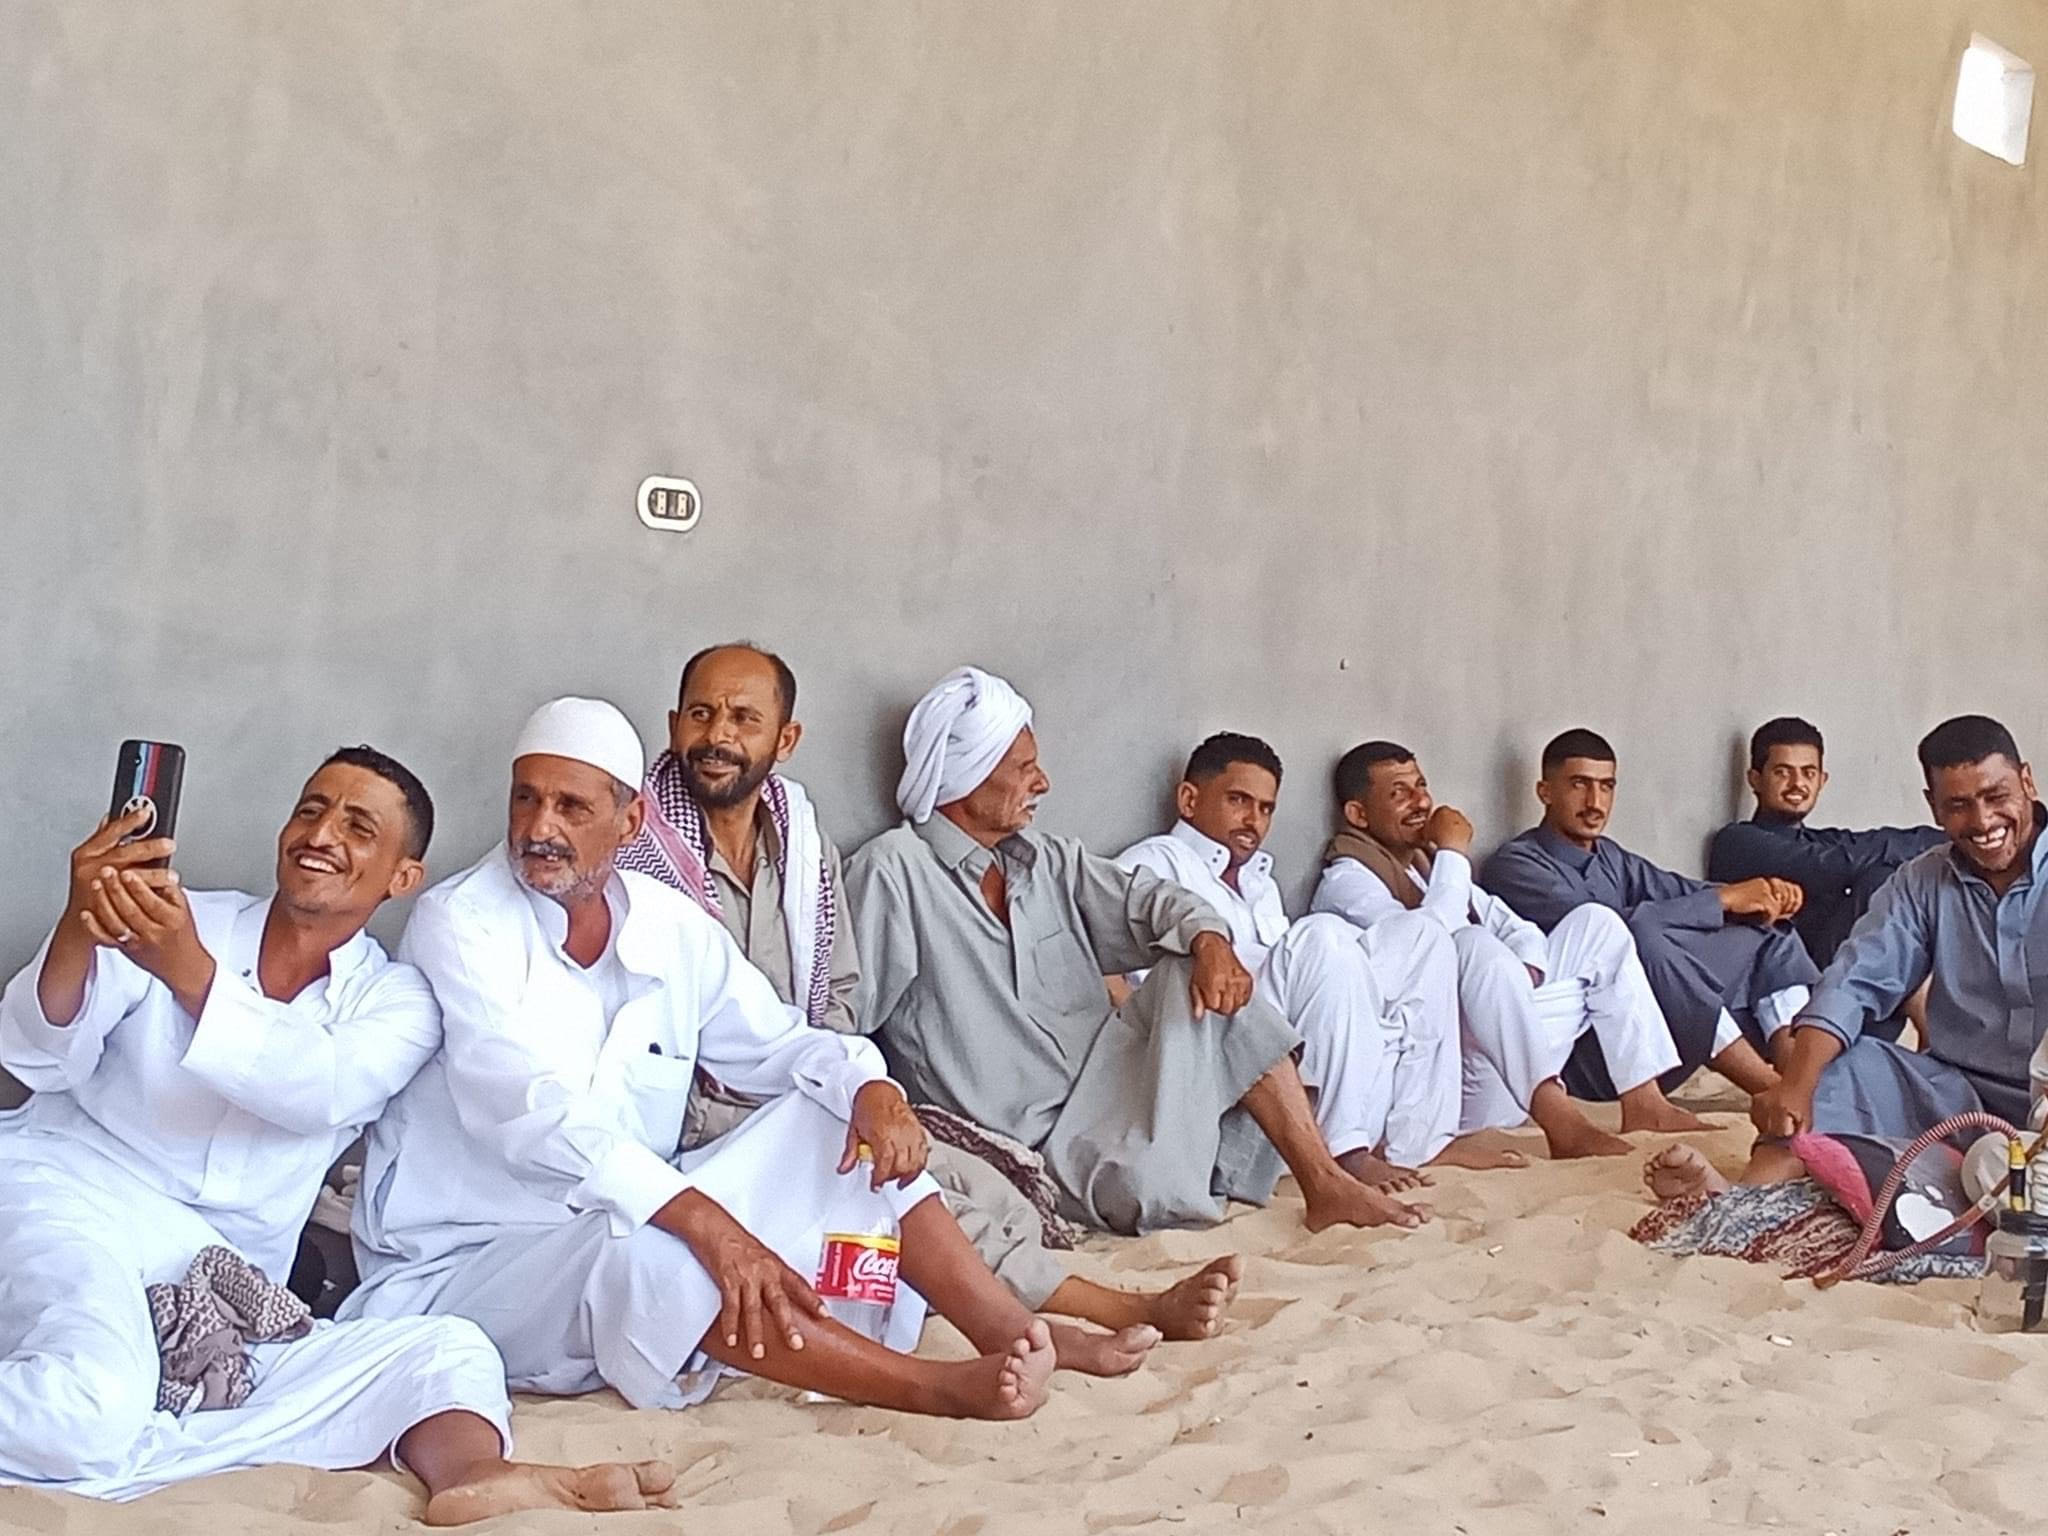 احتفالات أهالي سيناء بالعيد (1)